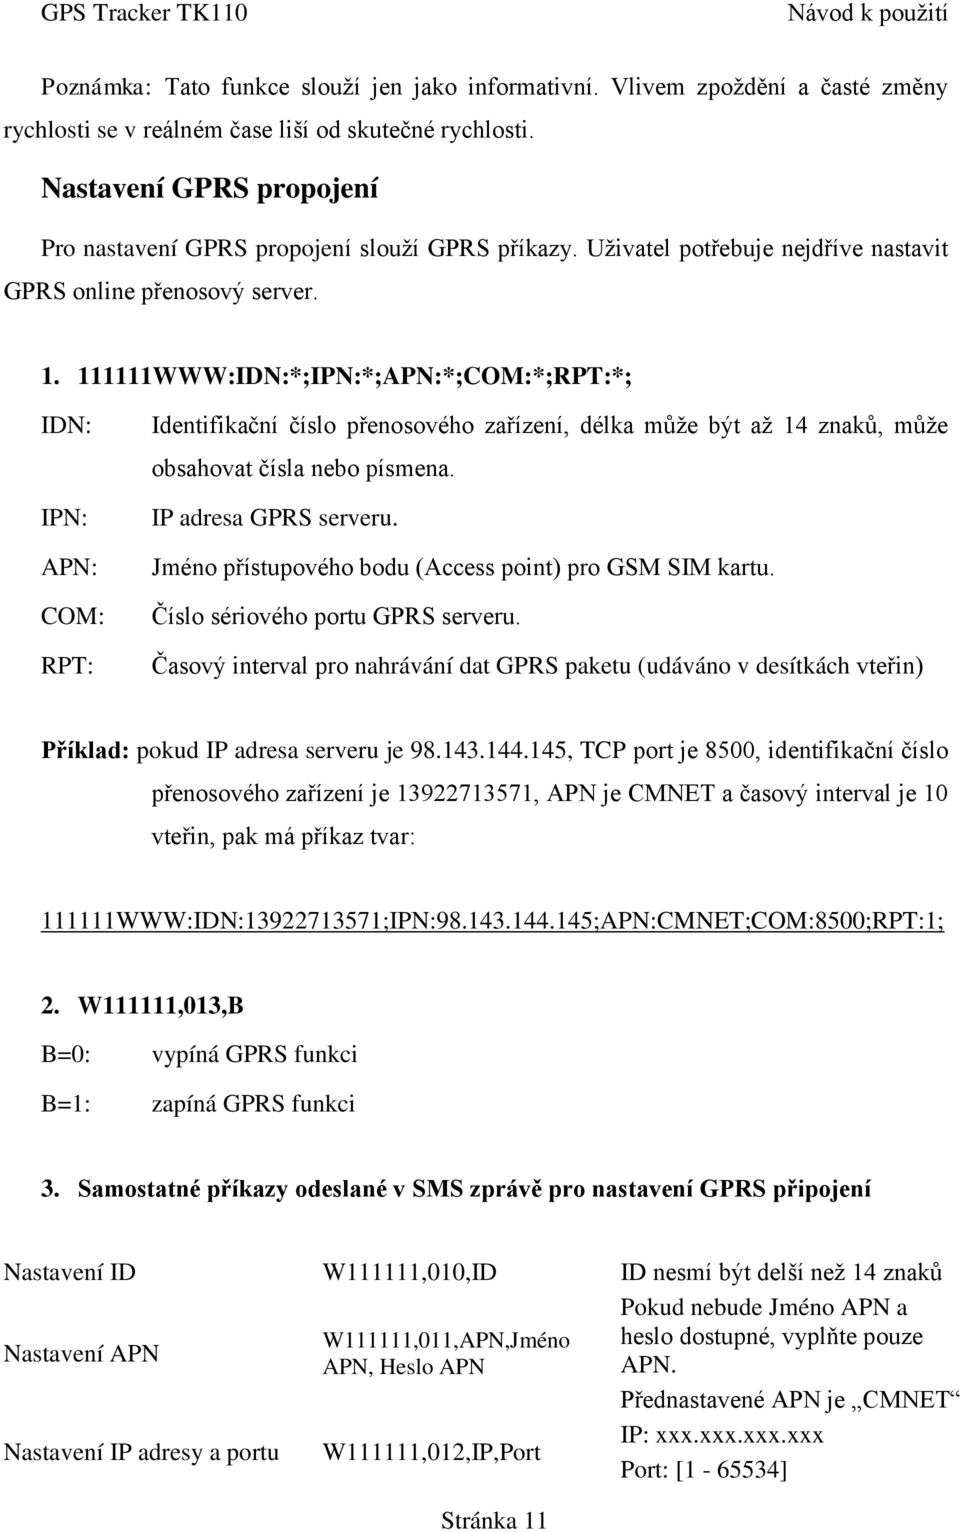 111111WWW:IDN:*;IPN:*;APN:*;COM:*;RPT:*; IDN: IPN: APN: COM: RPT: Identifikační číslo přenosového zařízení, délka může být až 14 znaků, může obsahovat čísla nebo písmena. IP adresa GPRS serveru.